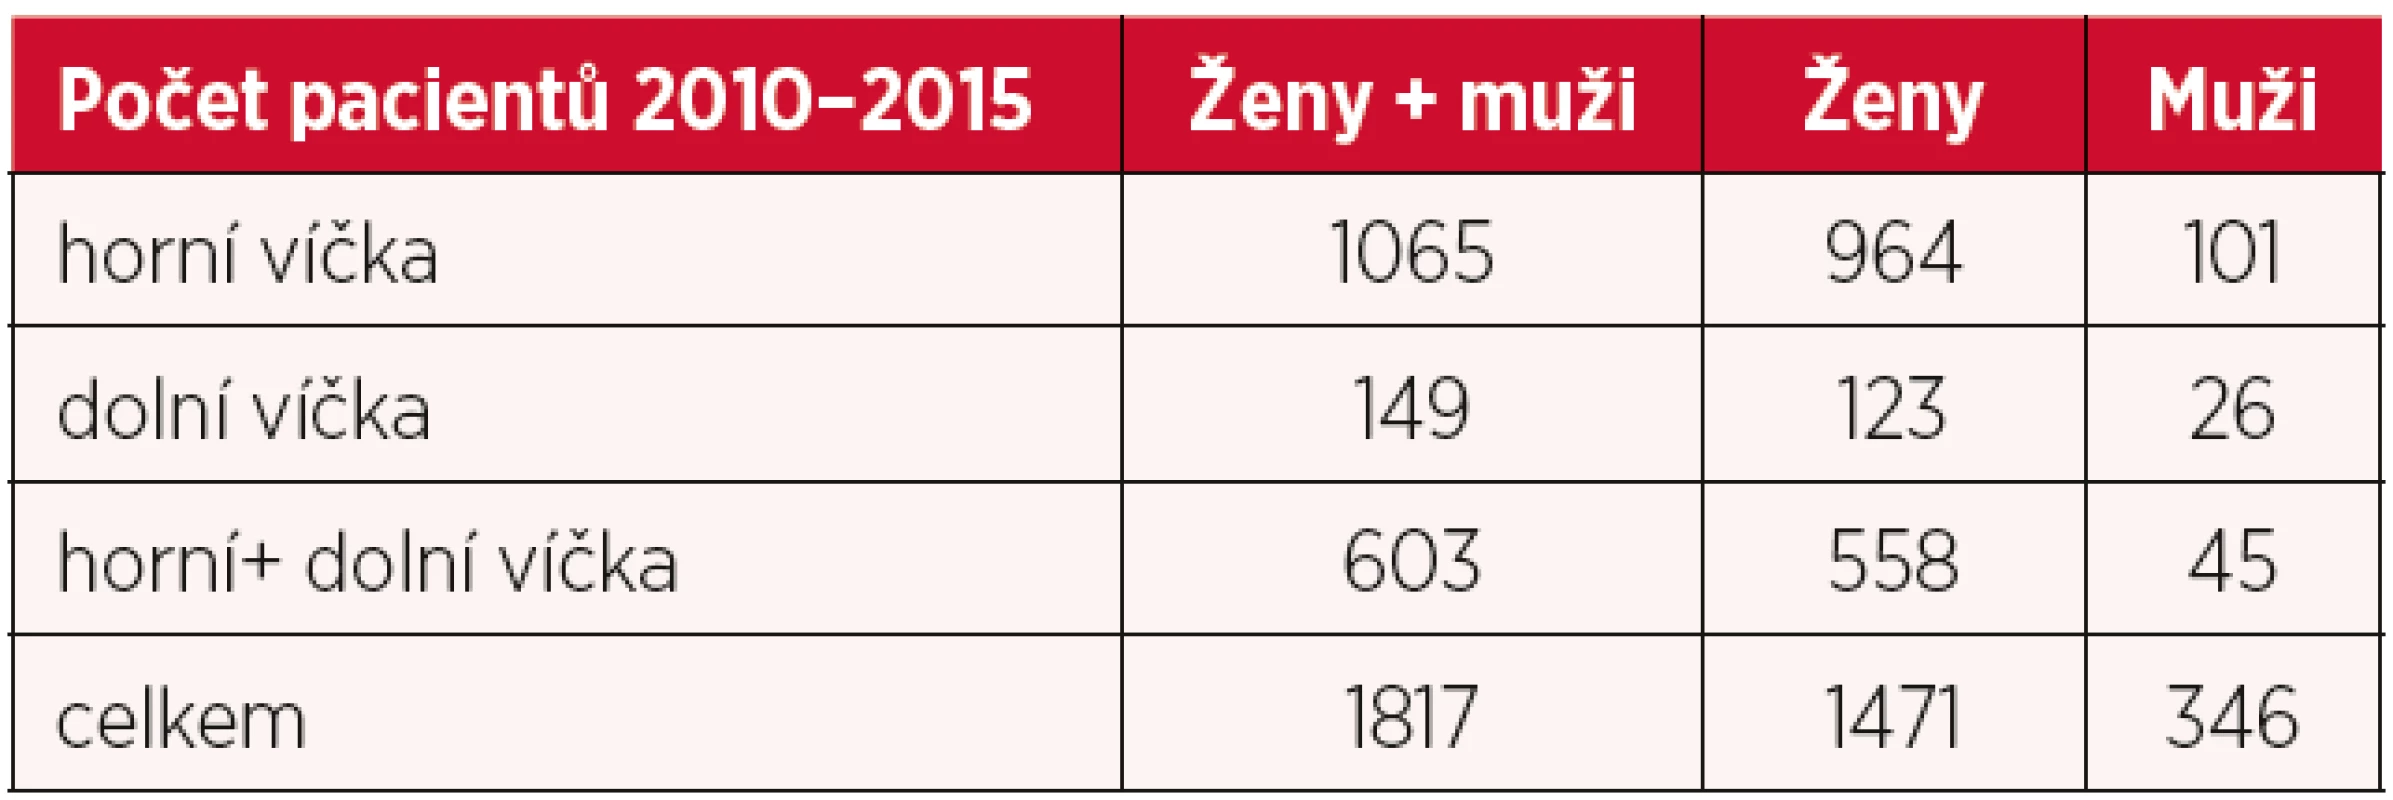 Počet odoperovaných pacientů 2010–2015 s dotazníkem